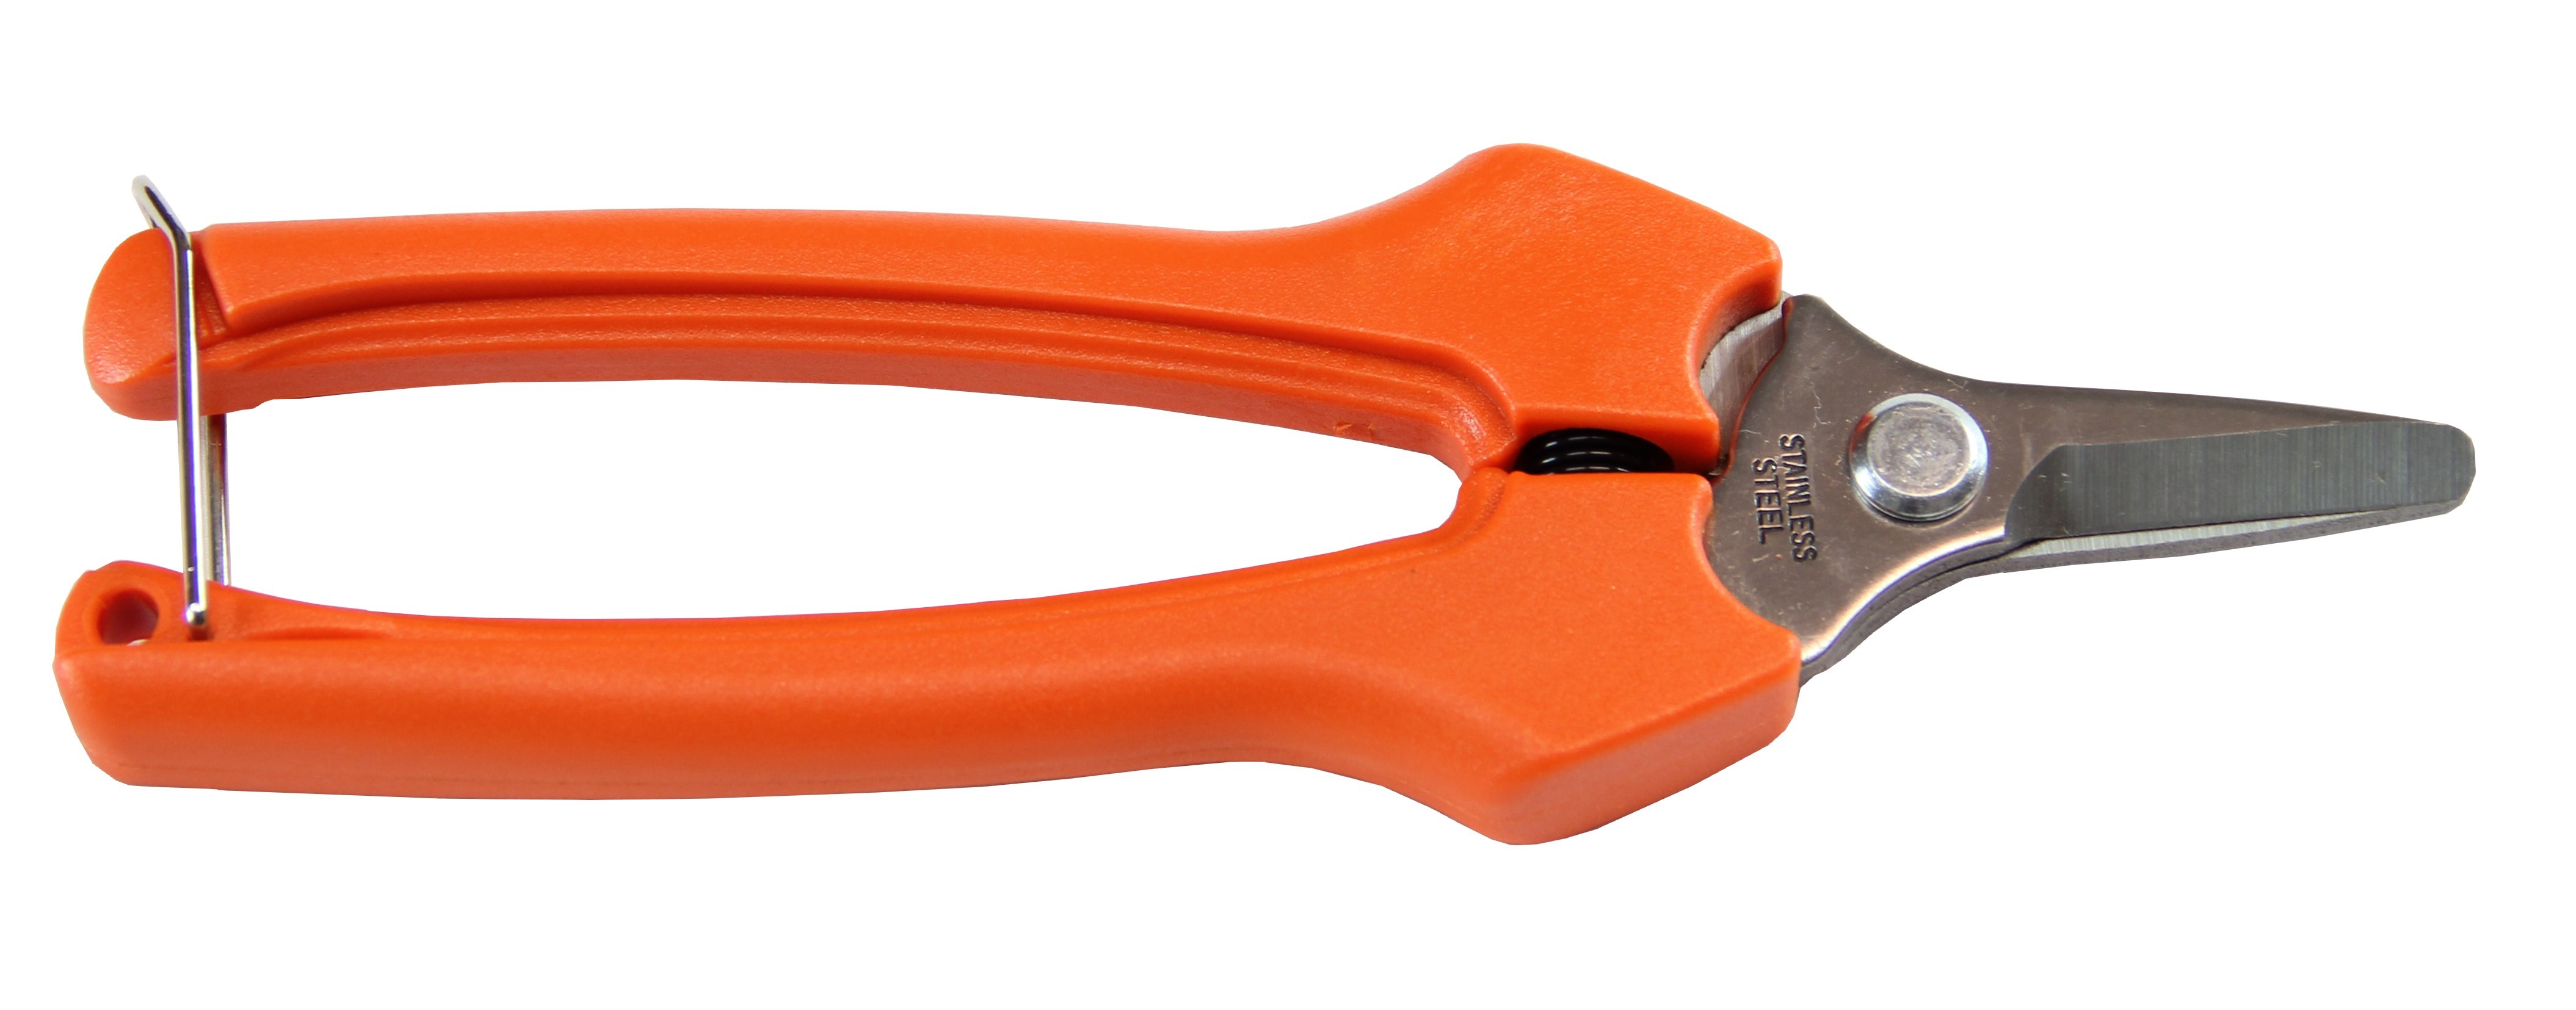 6.5” Stainless Steel Fruit Scissors